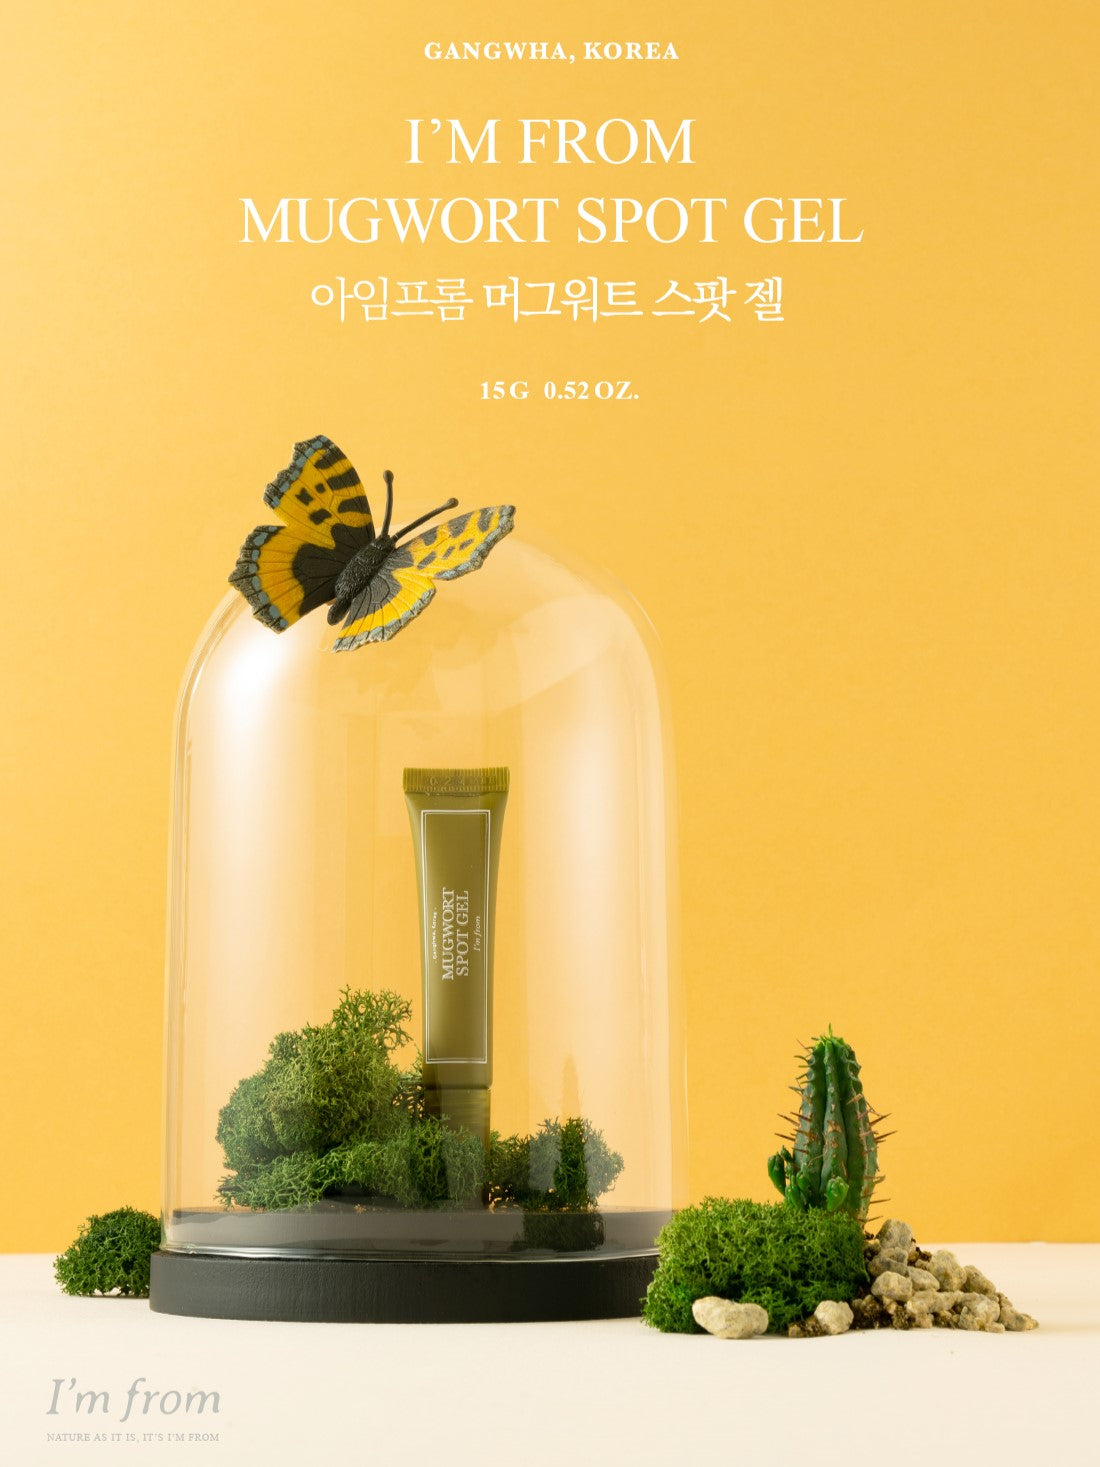 I'm From Mugwort Spot Gel 15g